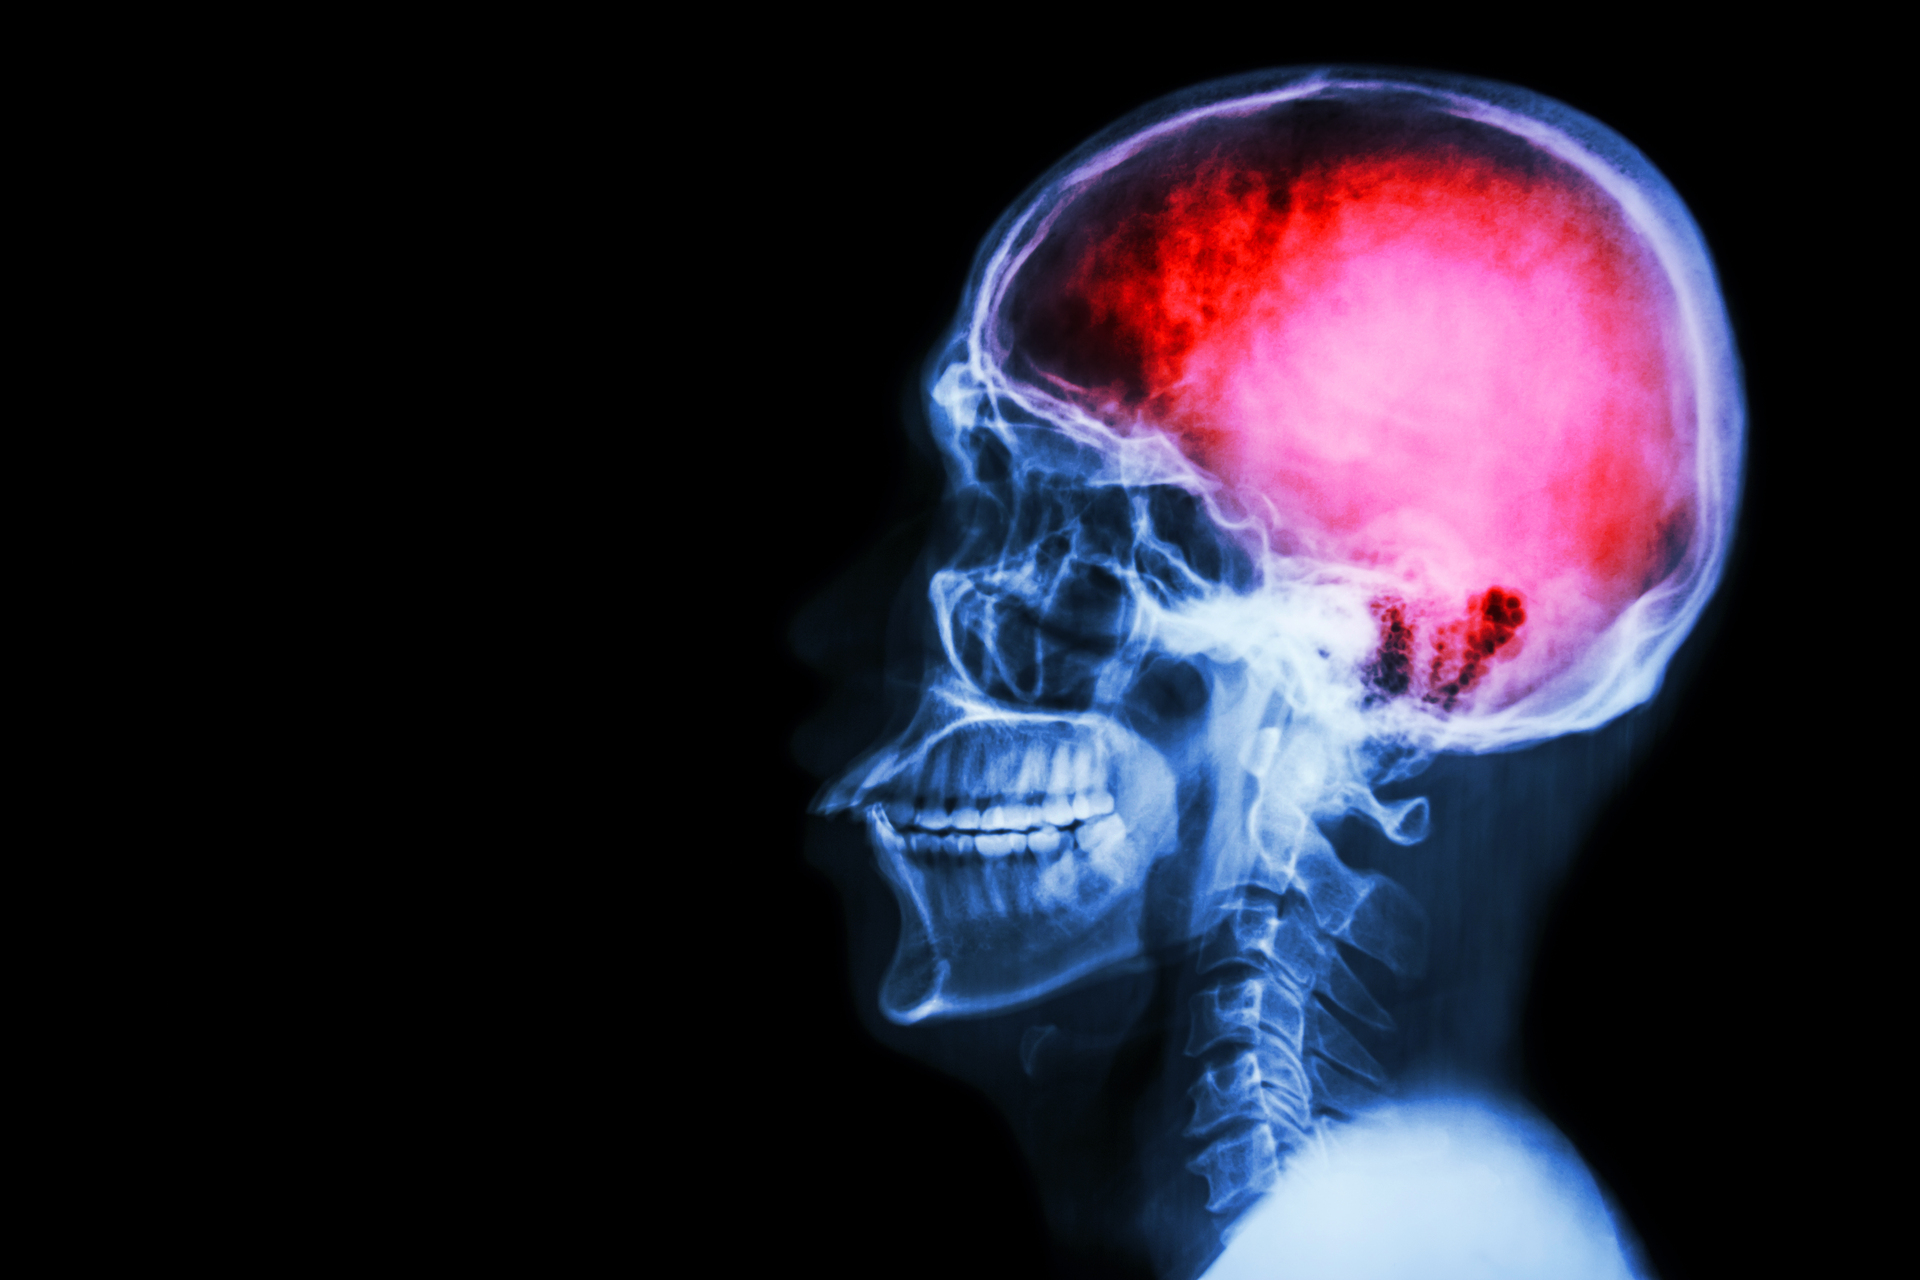 Na tym obrazku widzimy rentgenowskie zdjęcie mózgu, które ukazuje obszar dotknięty udarem. Jasno zaznaczone obszary niedokrwienia wskazują na uszkodzenie tkanek mózgowych. Widoczne zmiany na zdjęciu obrazują poważne konsekwencje udaru mózgu i mogą służyć jako narzędzie diagnostyczne dla lekarzy. To zatrważające zdjęcie rentgenowskie przypomina nam o pilnej potrzebie rozpoznawania i leczenia udarów w celu minimalizacji ich skutków dla pacjentów